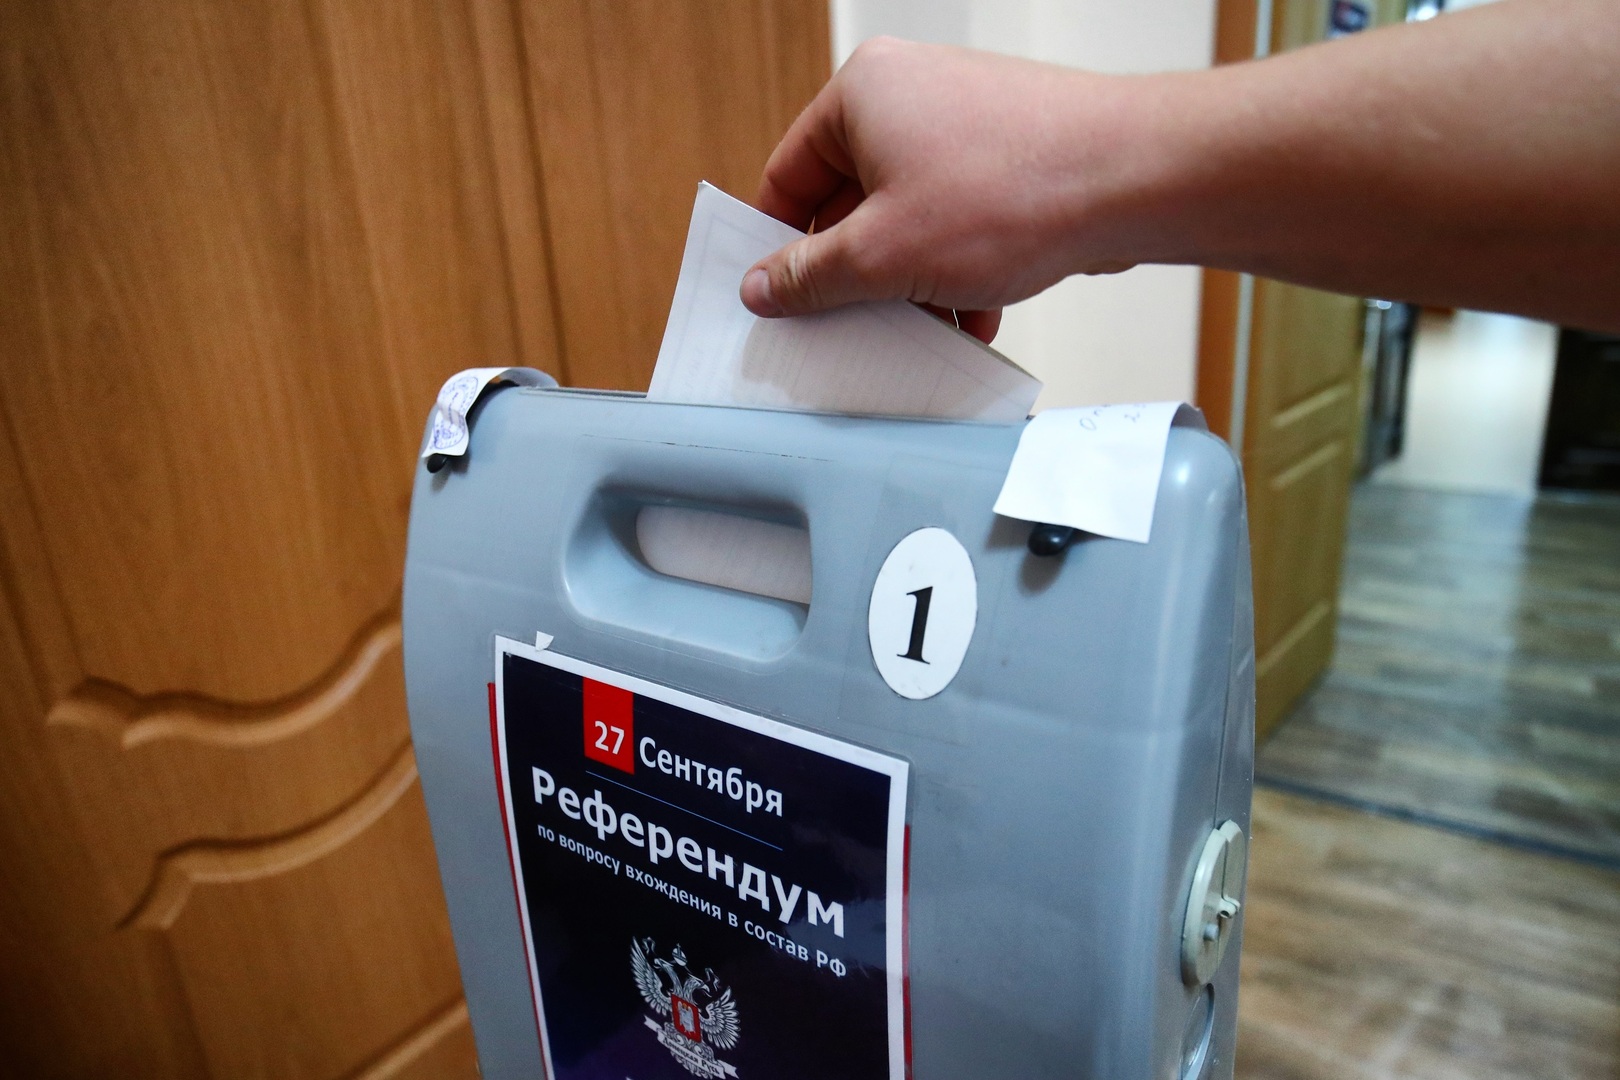 إقبال كبير على الاقتراع في اليوم الأول من استفتاءات الانضمام إلى روسيا